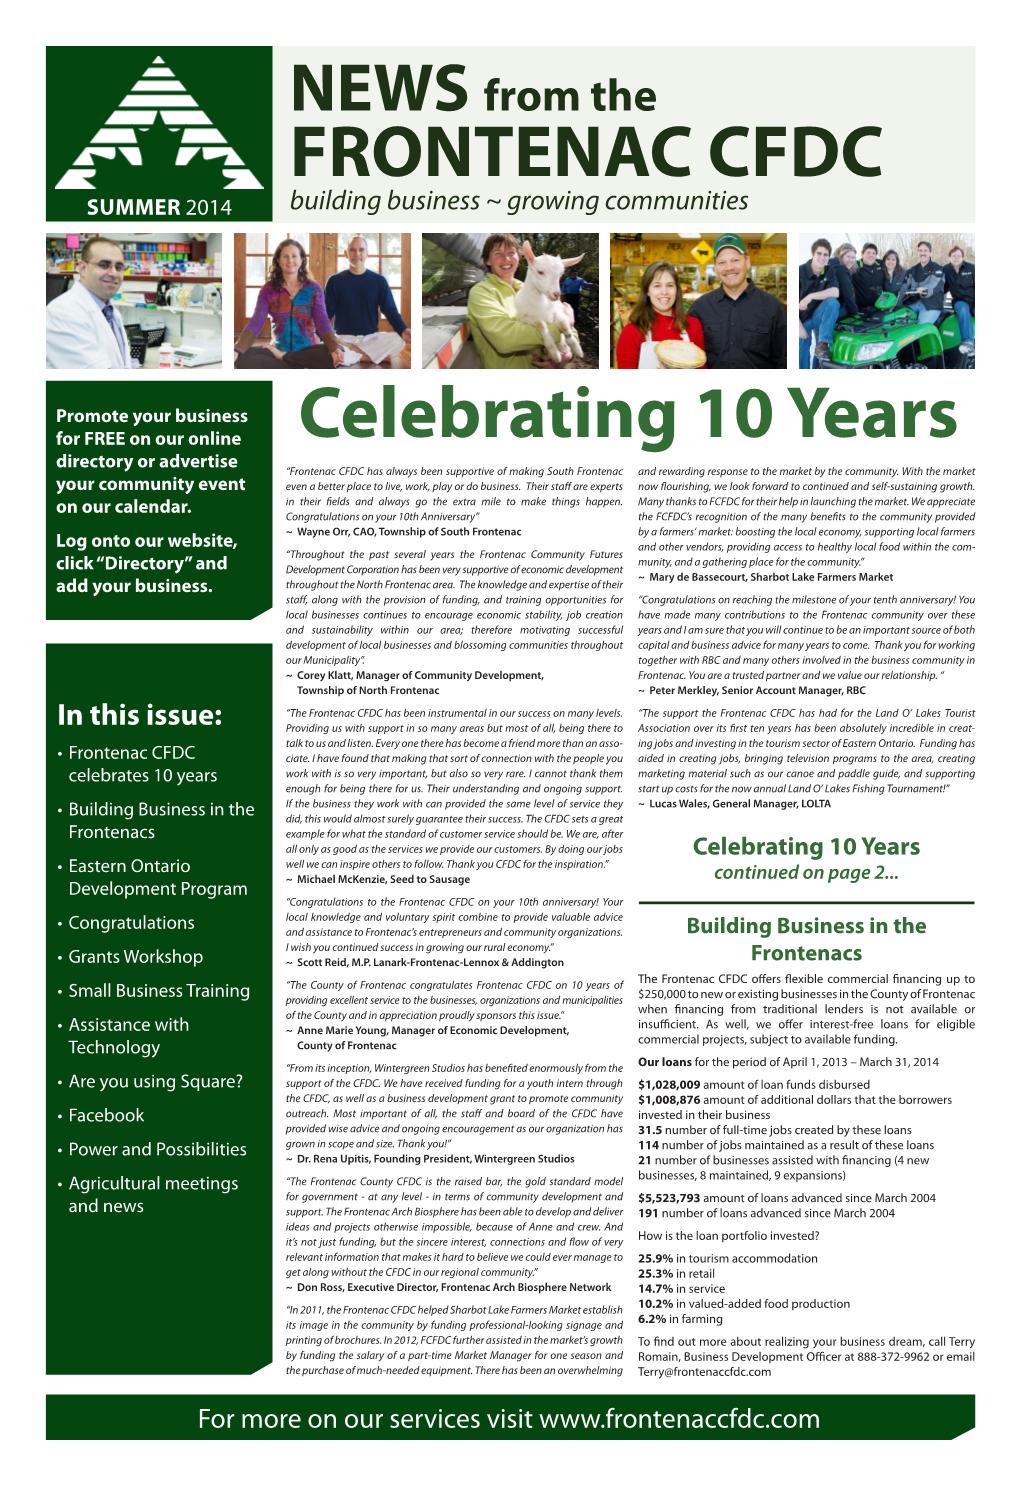 FRONTENAC CFDC Celebrating 10 Years